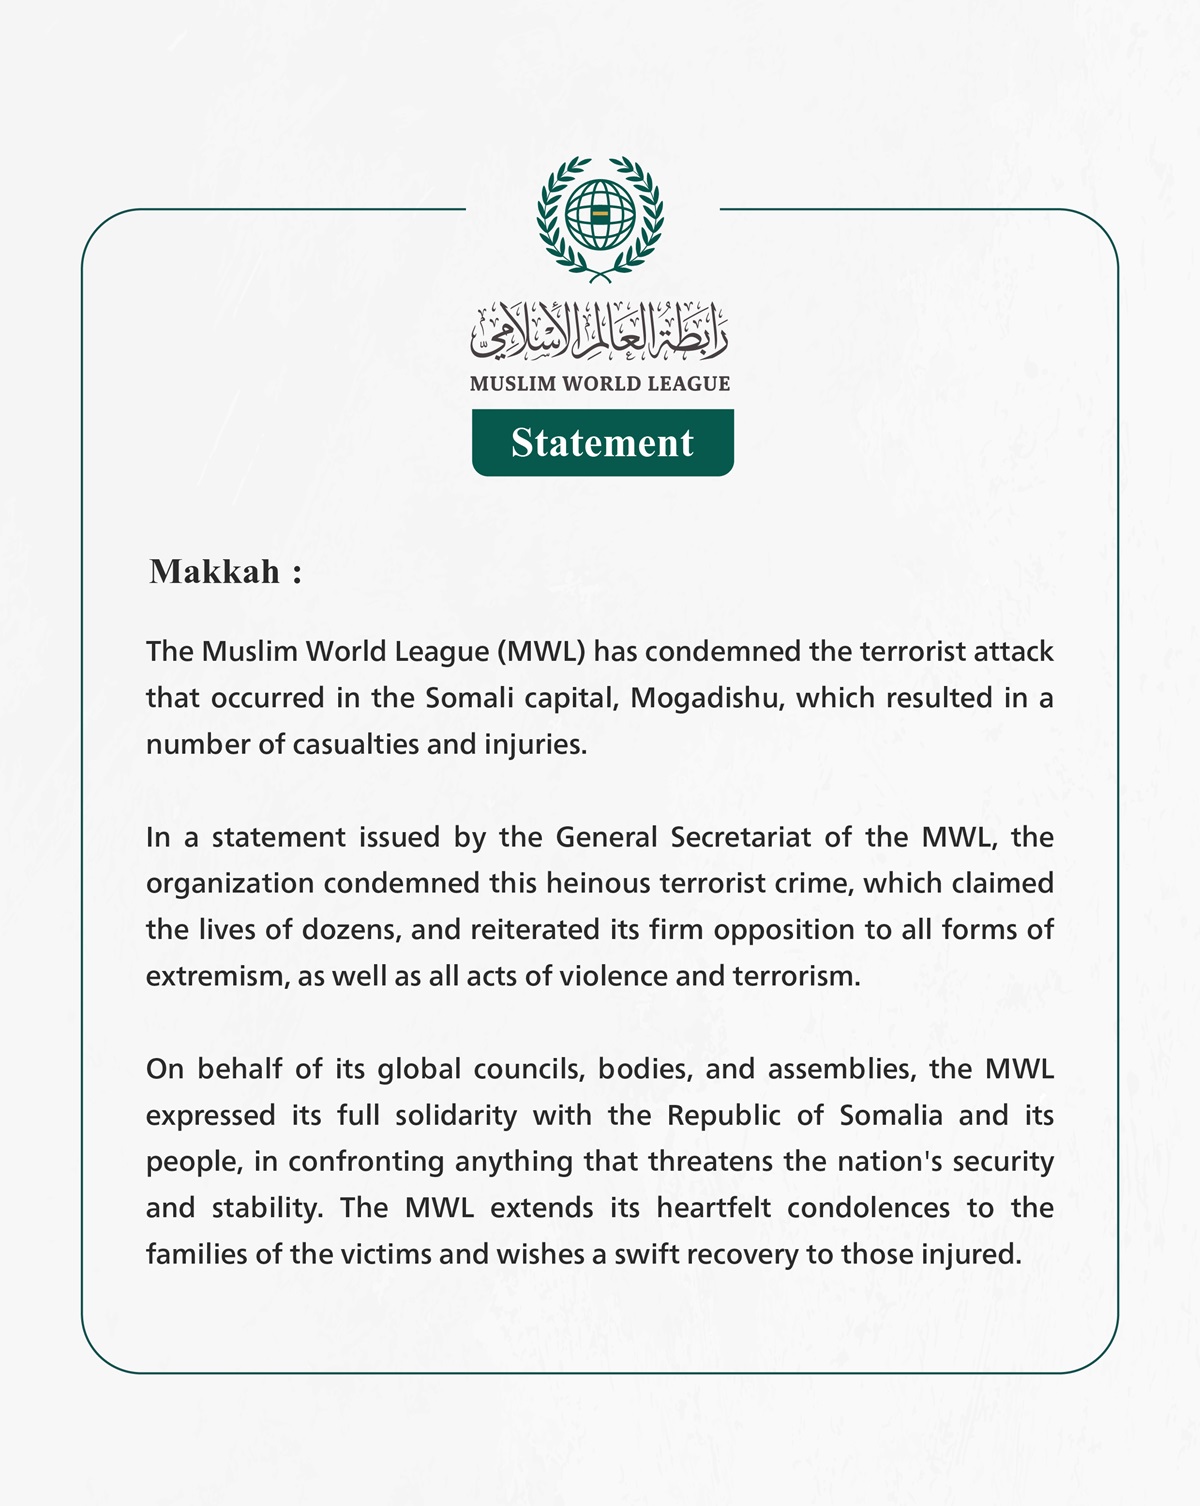 The Muslim World League Condemns the Terrorist Attack in the Somali Capital Mogadishu